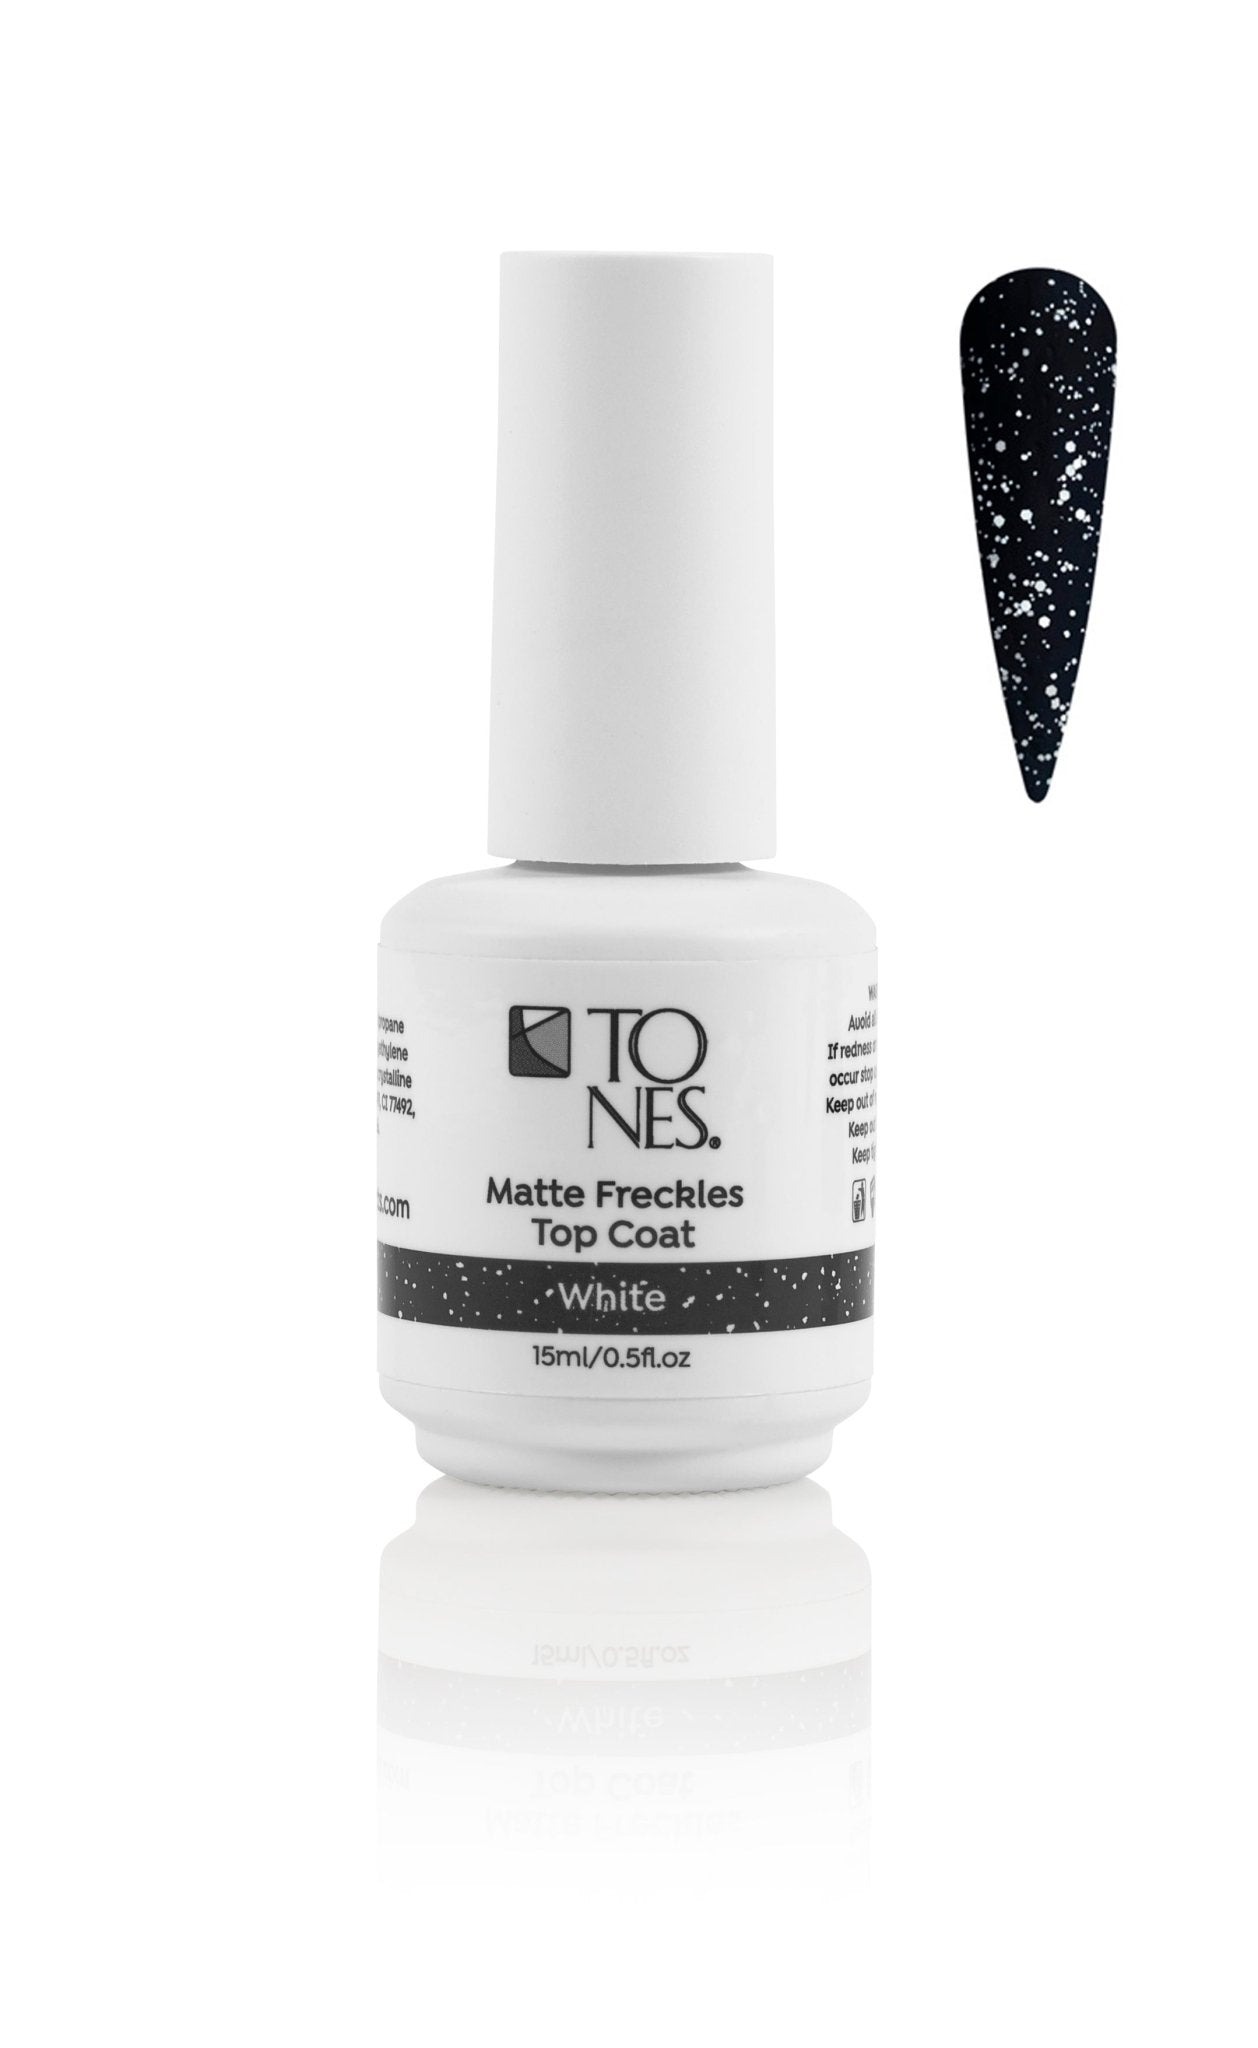 White Matte Nails with Diamond Glitter. #prettynails | Matte nails design,  White acrylic nails, White glitter nails